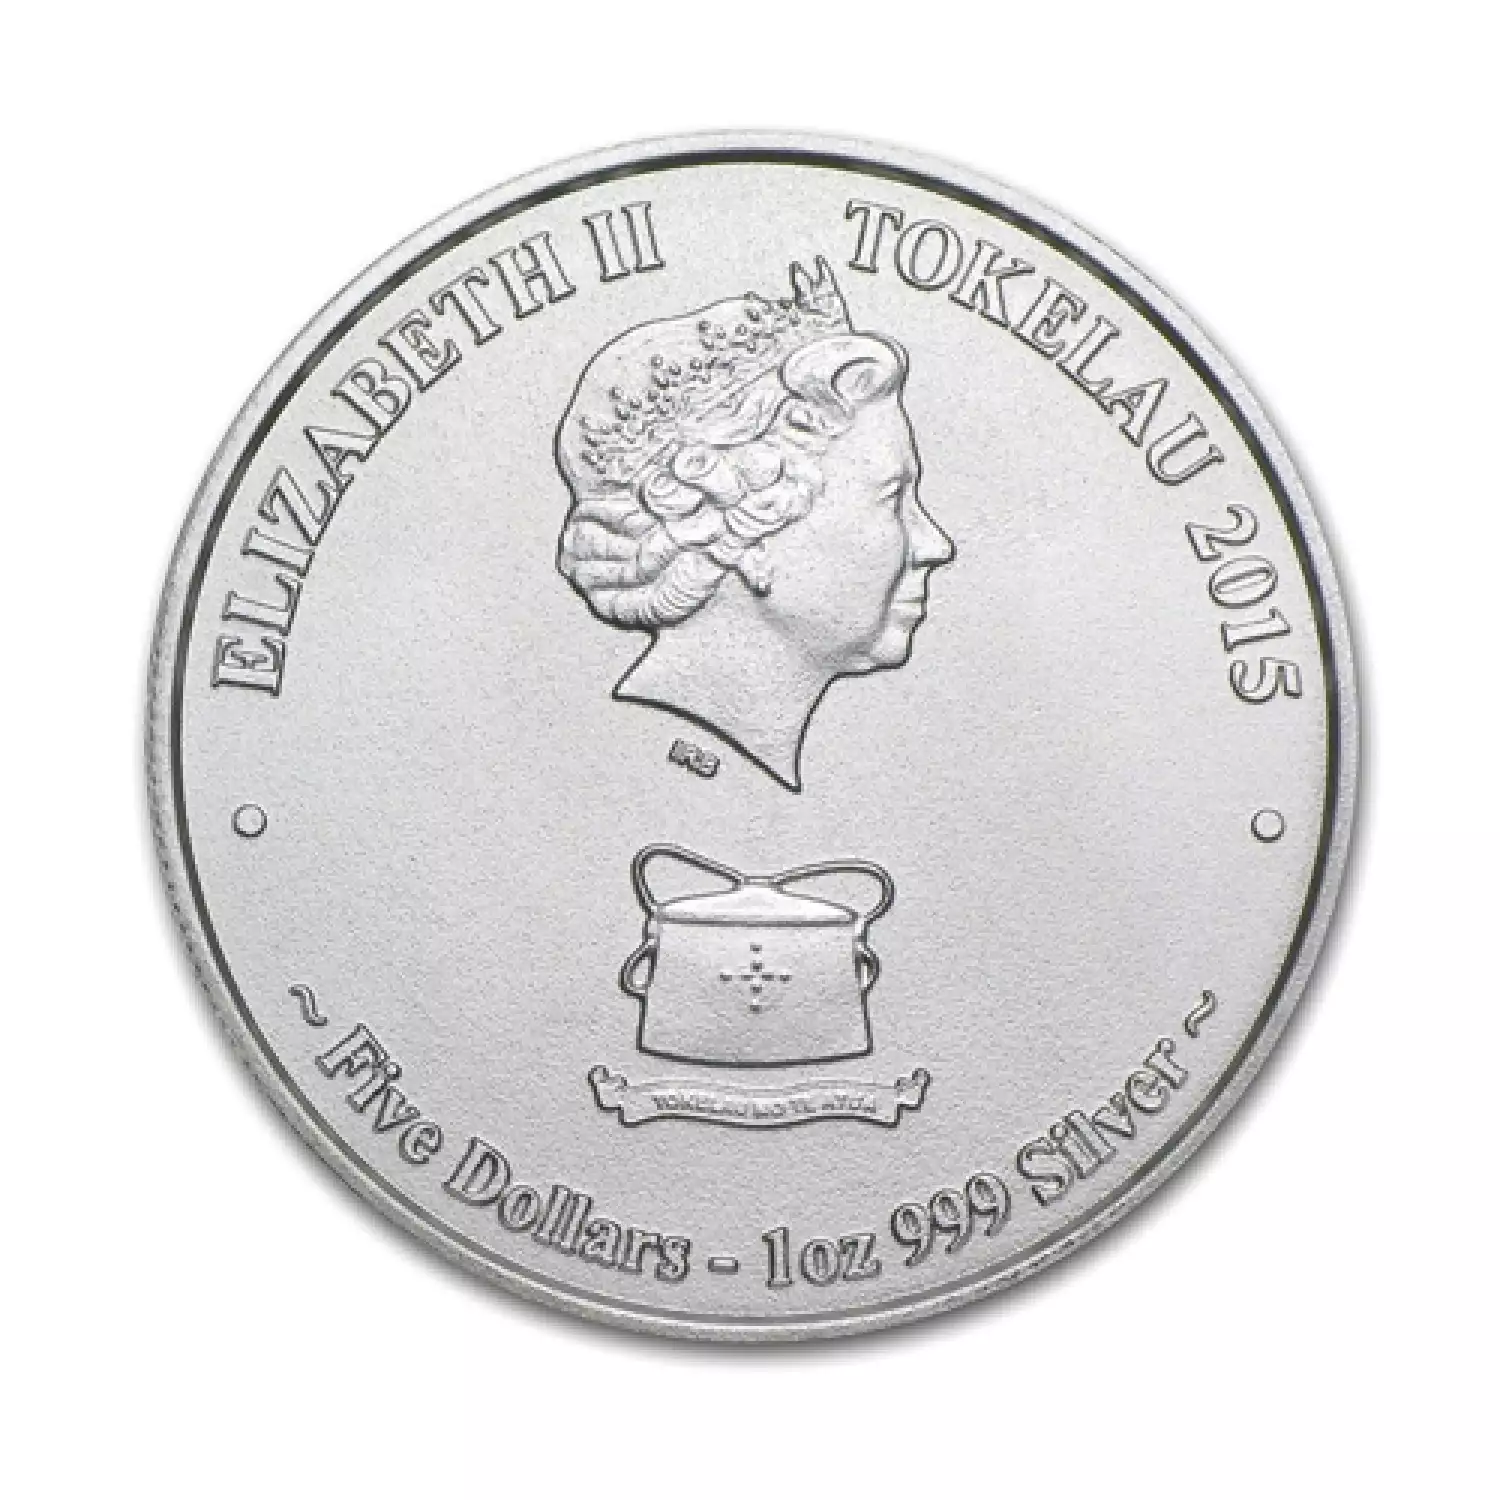 2015 1 oz Tokelau Silver Great White Shark Coin (3)